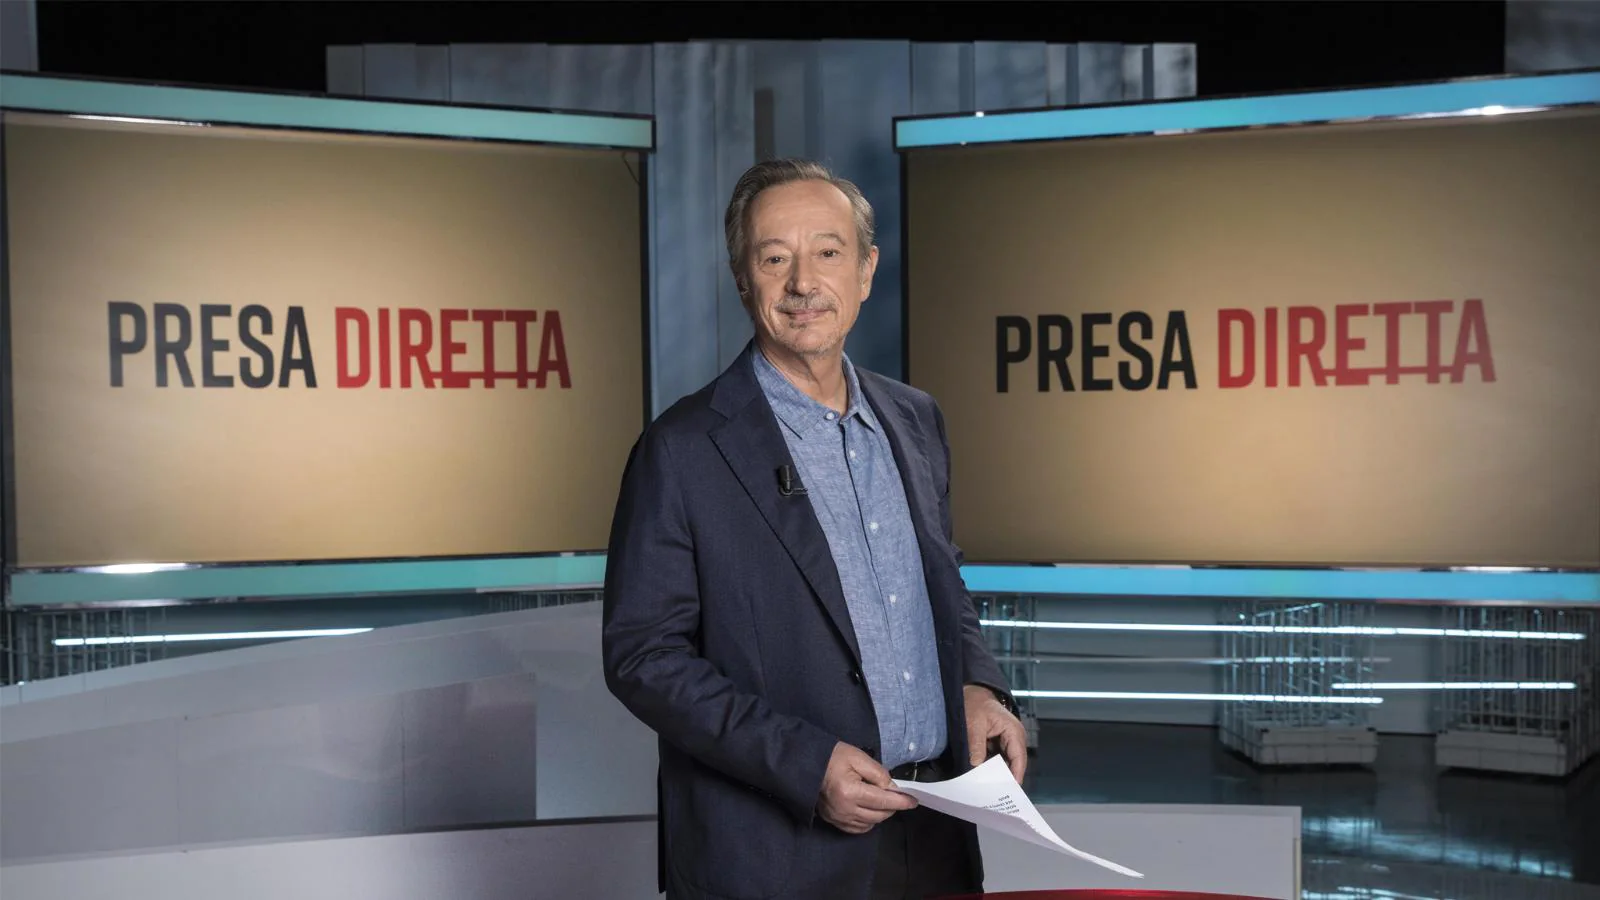 "PresaDiretta - L'Italia ha scelto", questa sera alle 21.25 su Rai 3: ospiti e anticipazioni